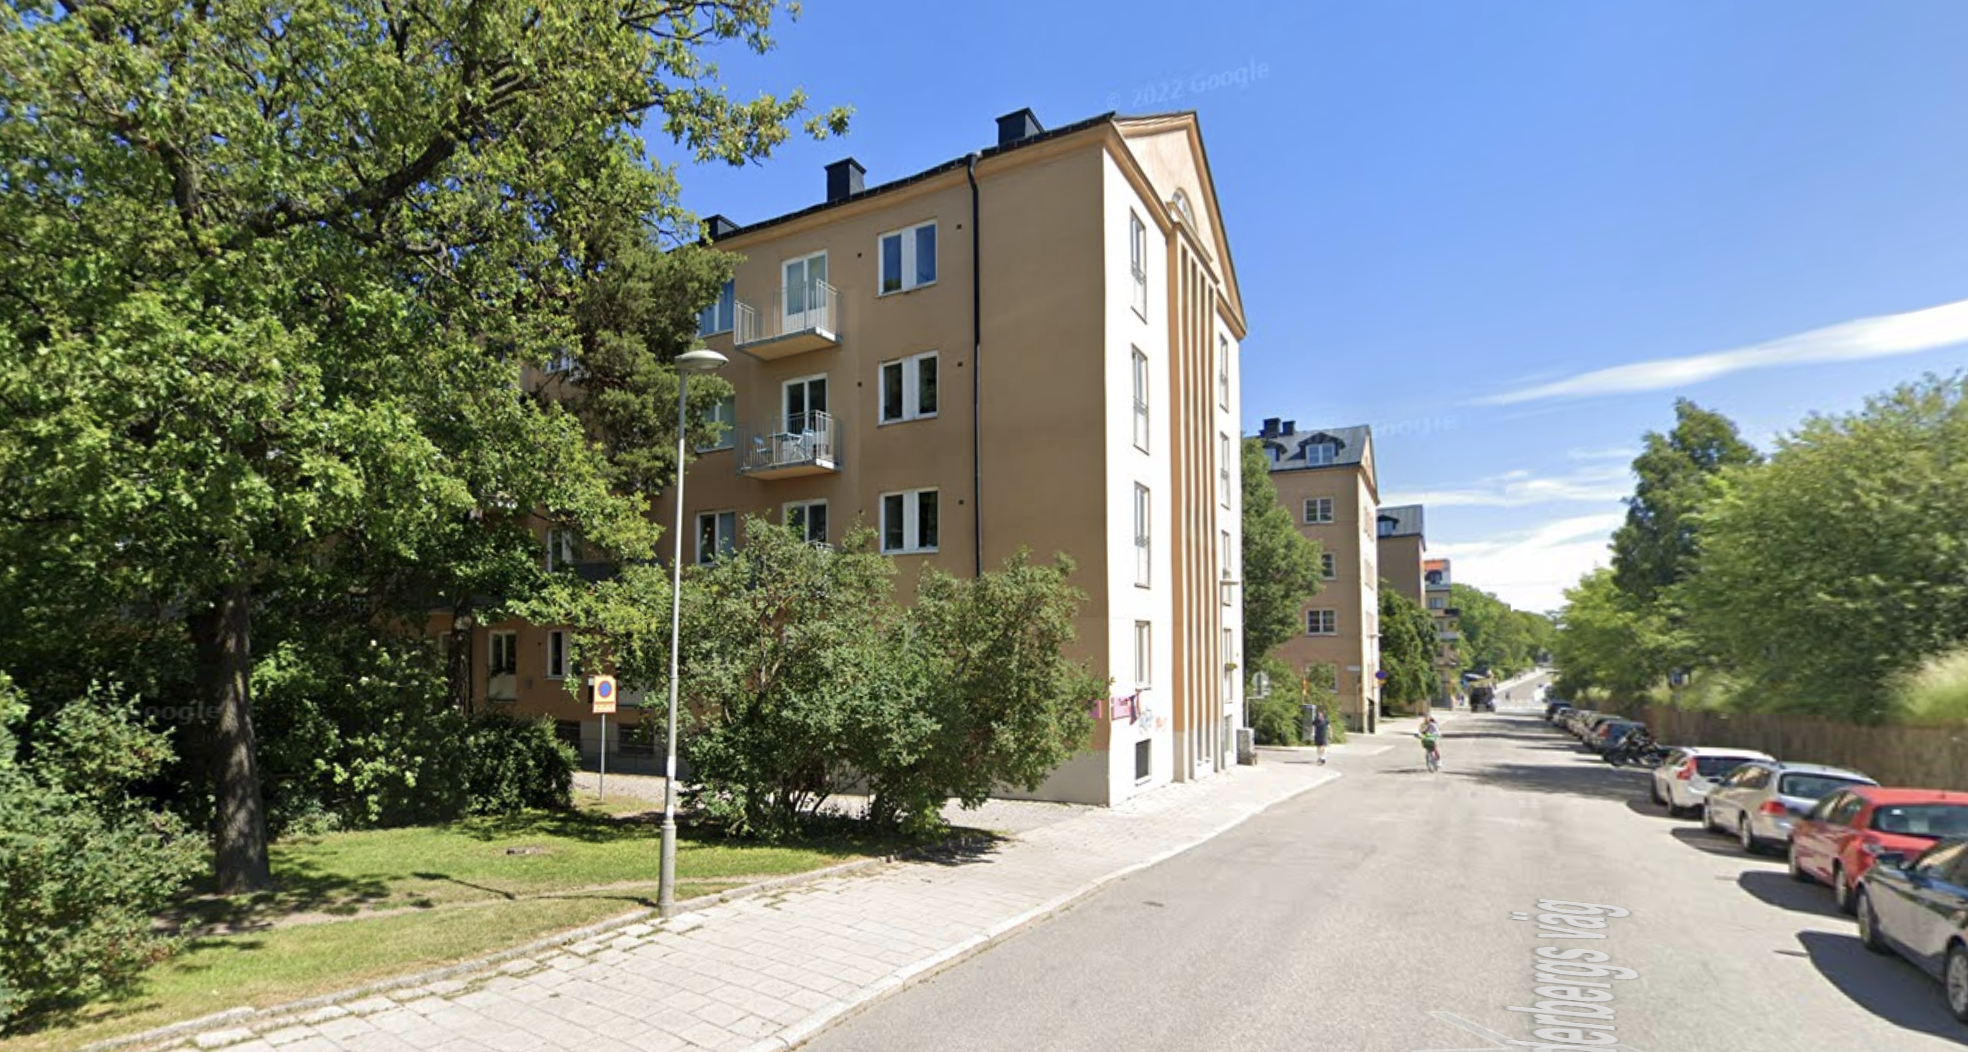 Как выглядит бюджетное жильё в дорогой Швеции? Одинокая хозяйка показала свои 28 квадратов выглядит, место, других, живут, наших, квартиры, стране, Швеции, балконы, которых, другой, районе, стороны, планировкой, редко, встречаются, живет, когда, квадратов, хрущевках